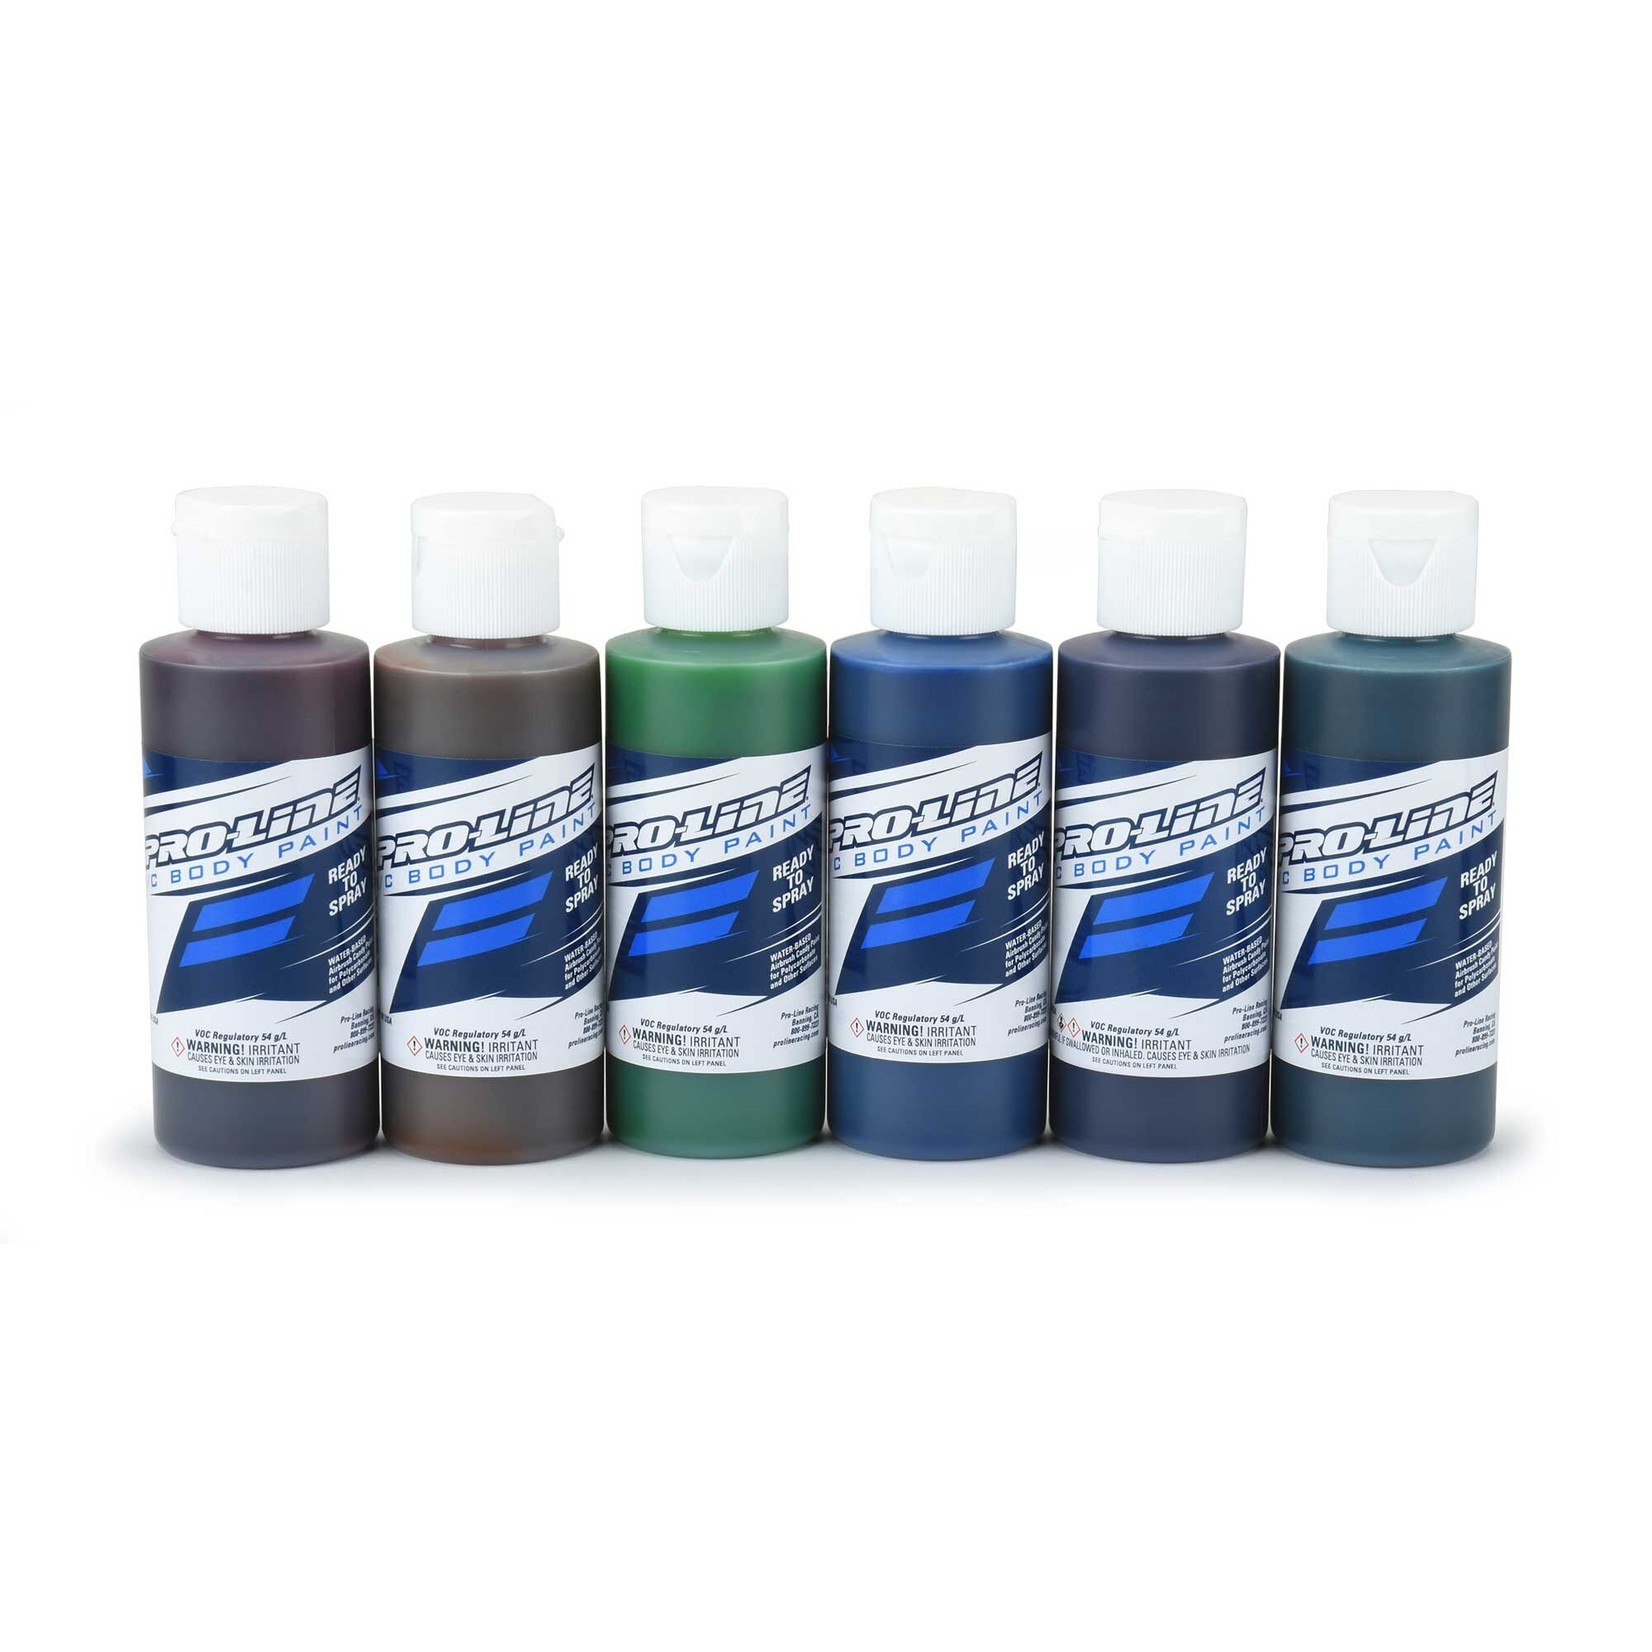 Pro-Line Pro-Line RC Body Paint Candy Color Set (6 Pack)